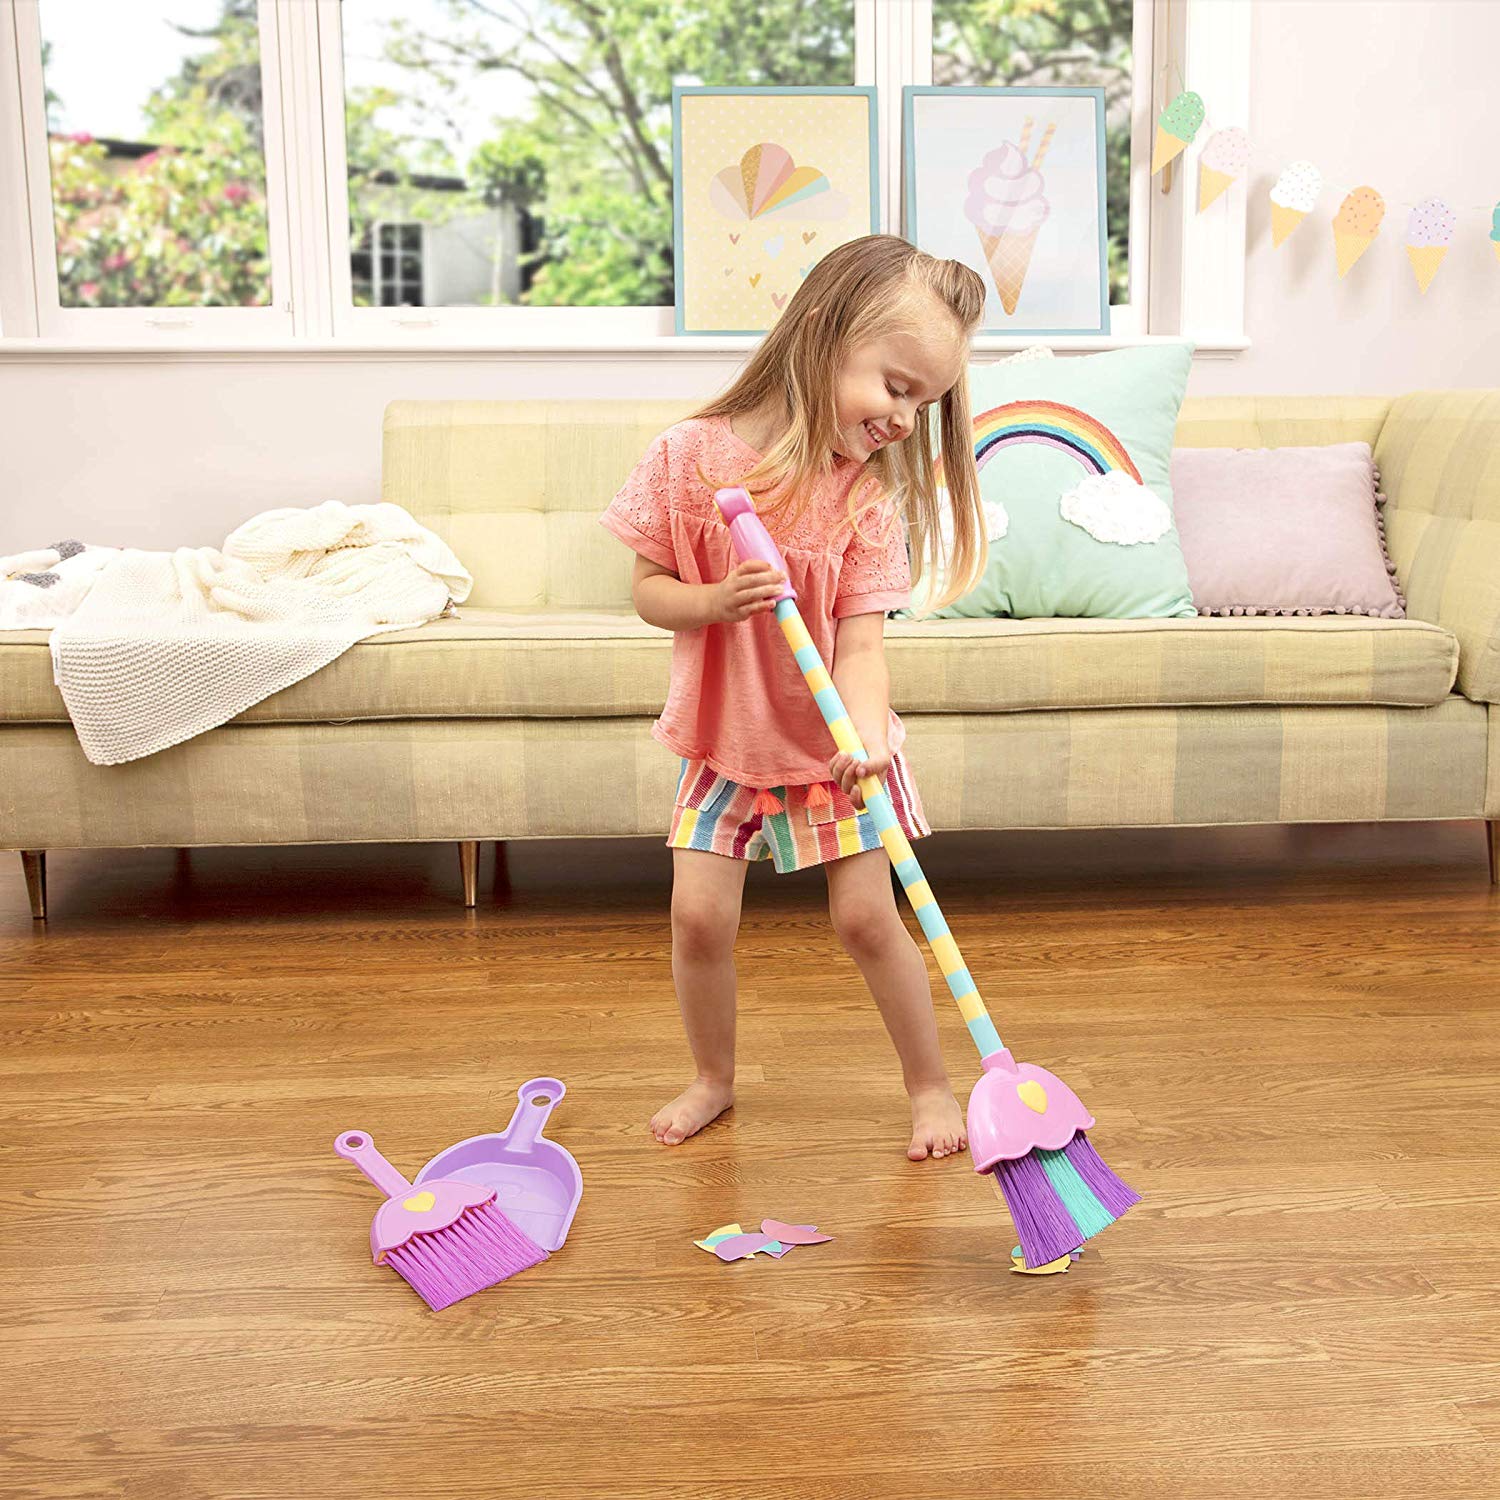 child's toy broom set